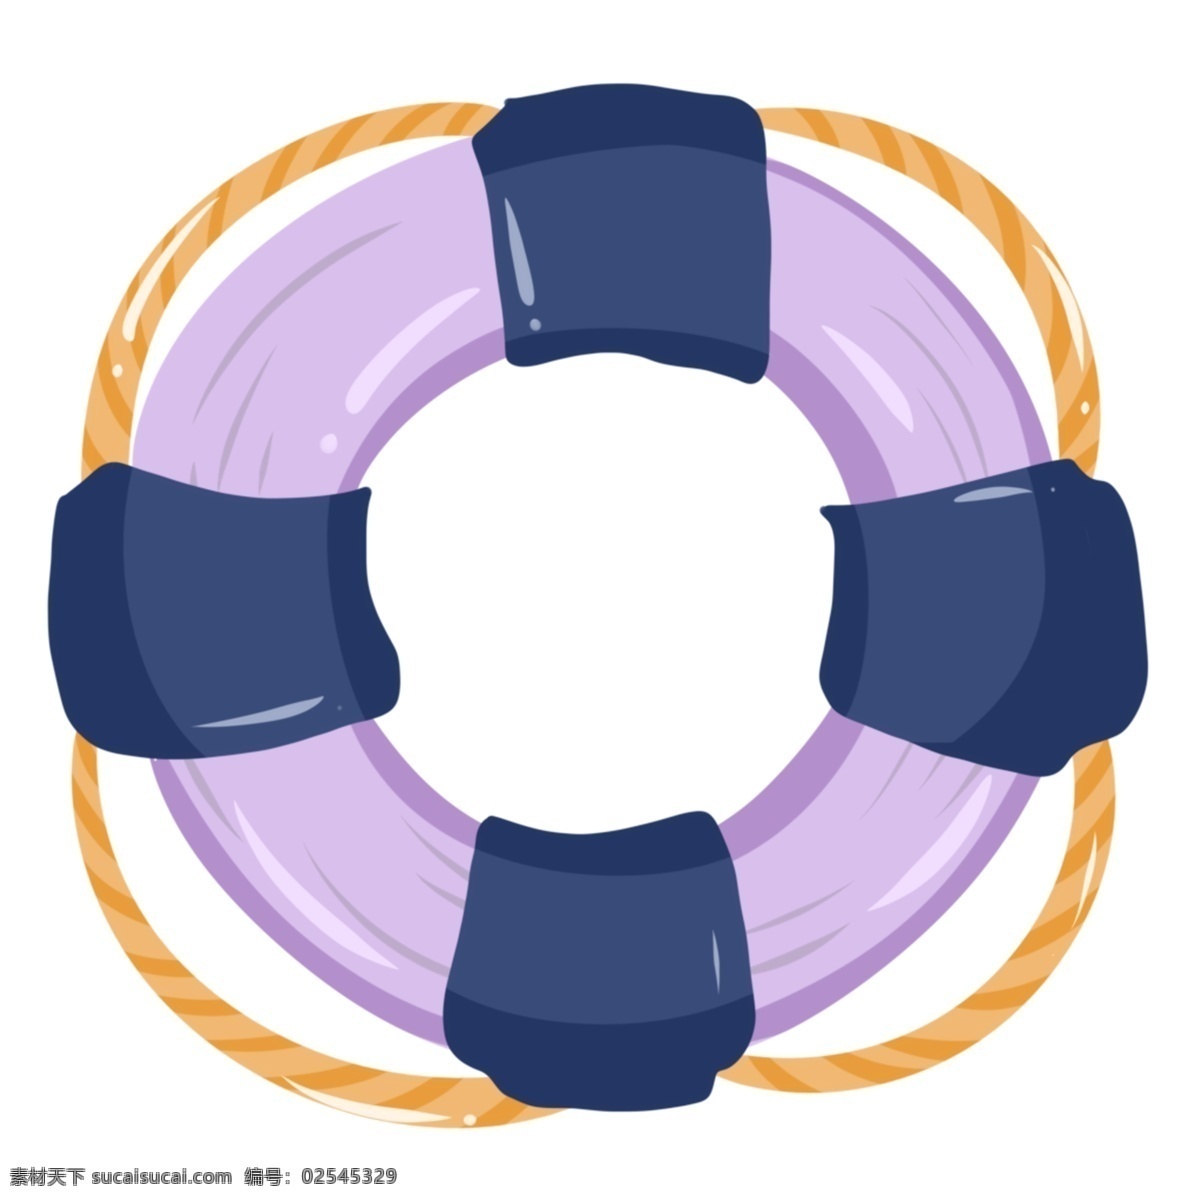 紫色 圆形 游泳 圈 救援设备 游泳圈